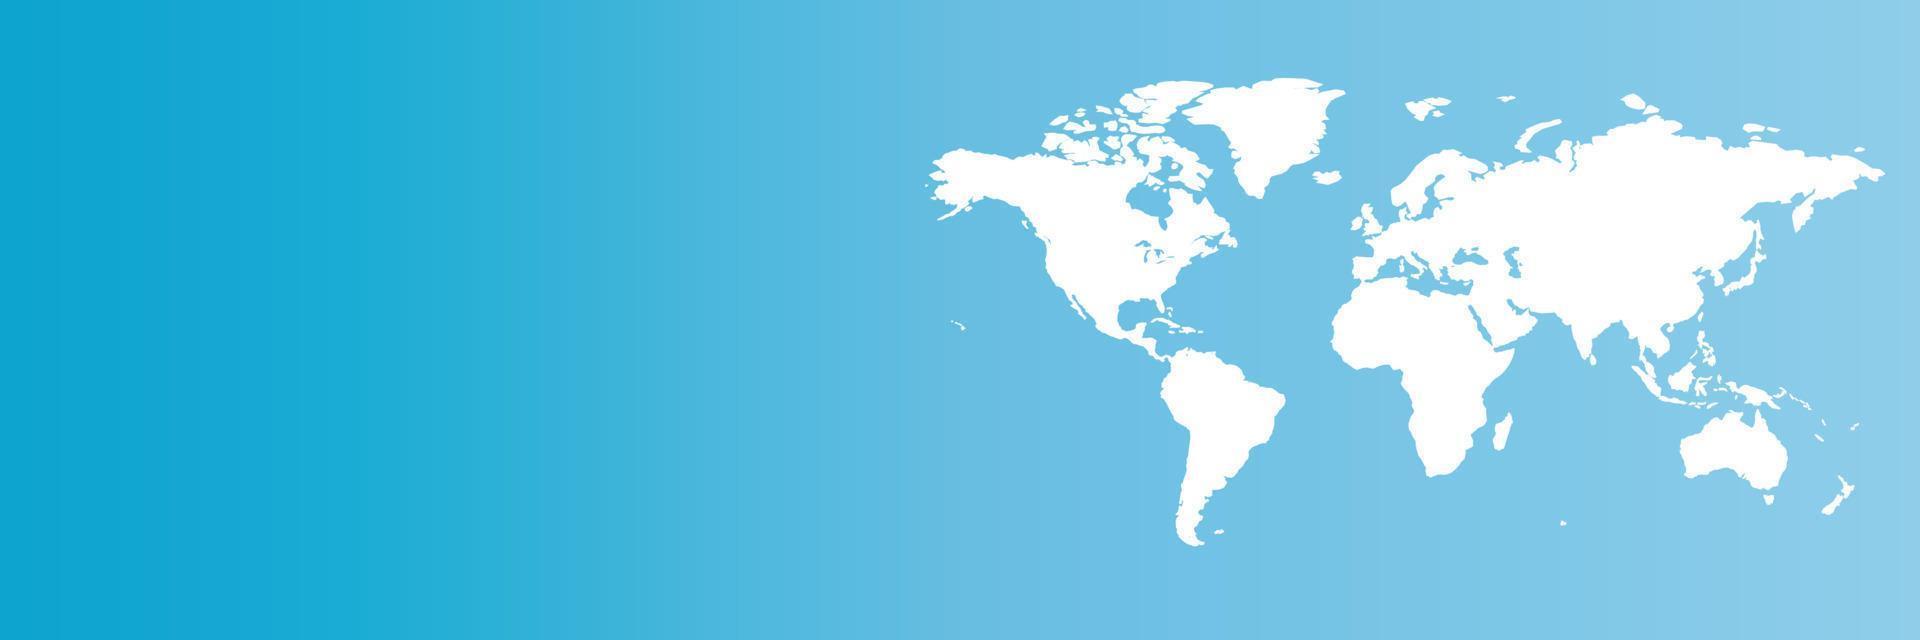 wereldkaart op blauwe hemel achtergrond banner vector